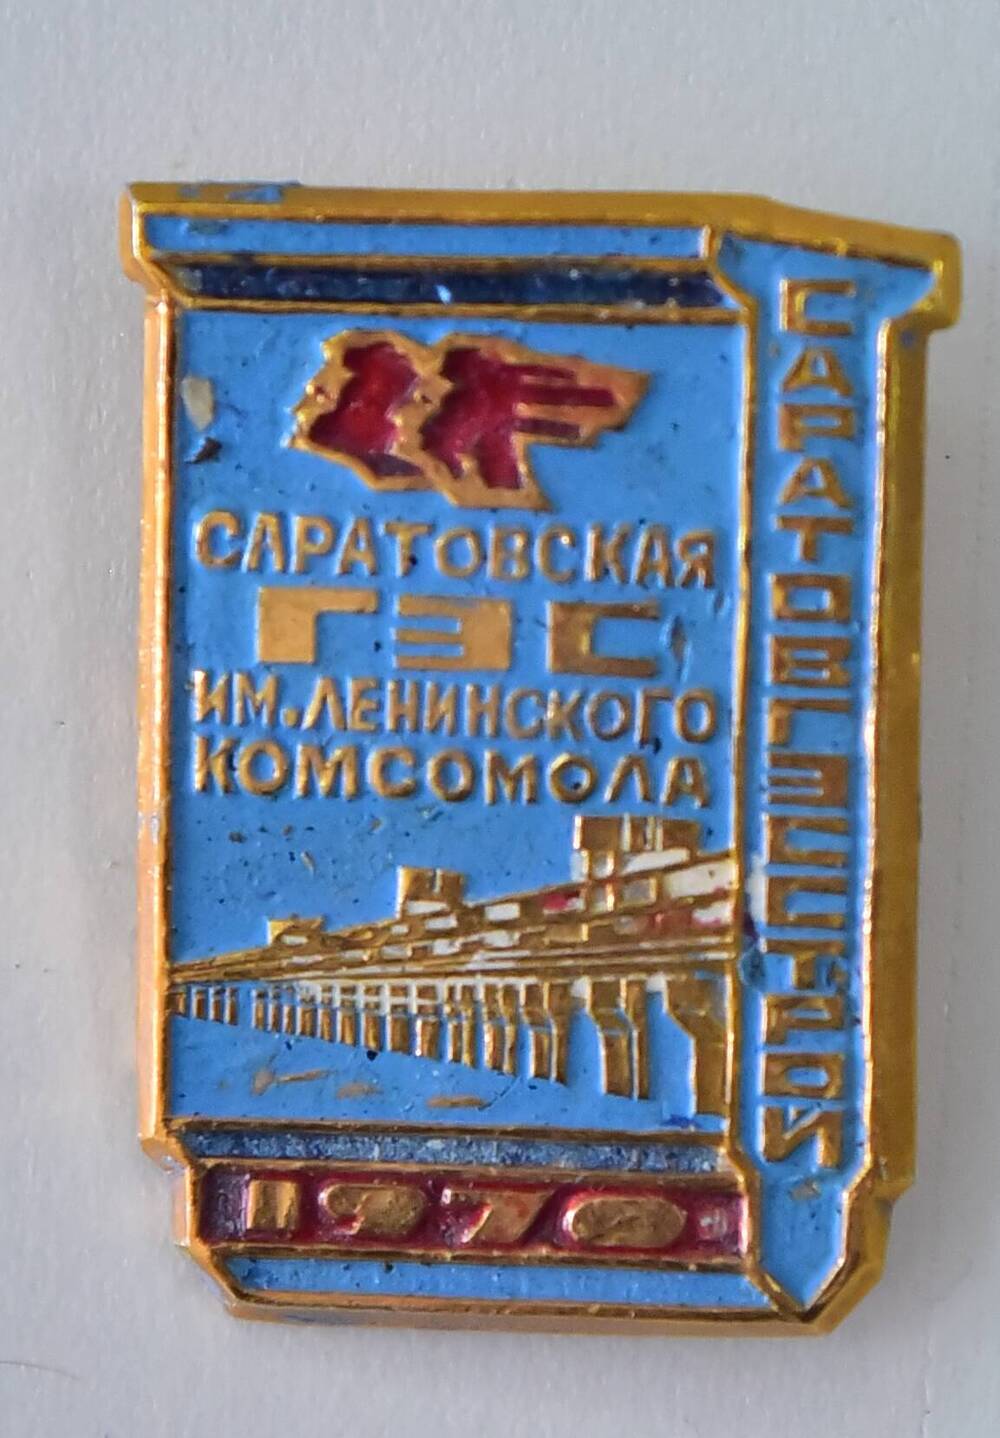 Значок «Саратовская ГЭС им. Ленинского комсомола. 1970». 1970 г.